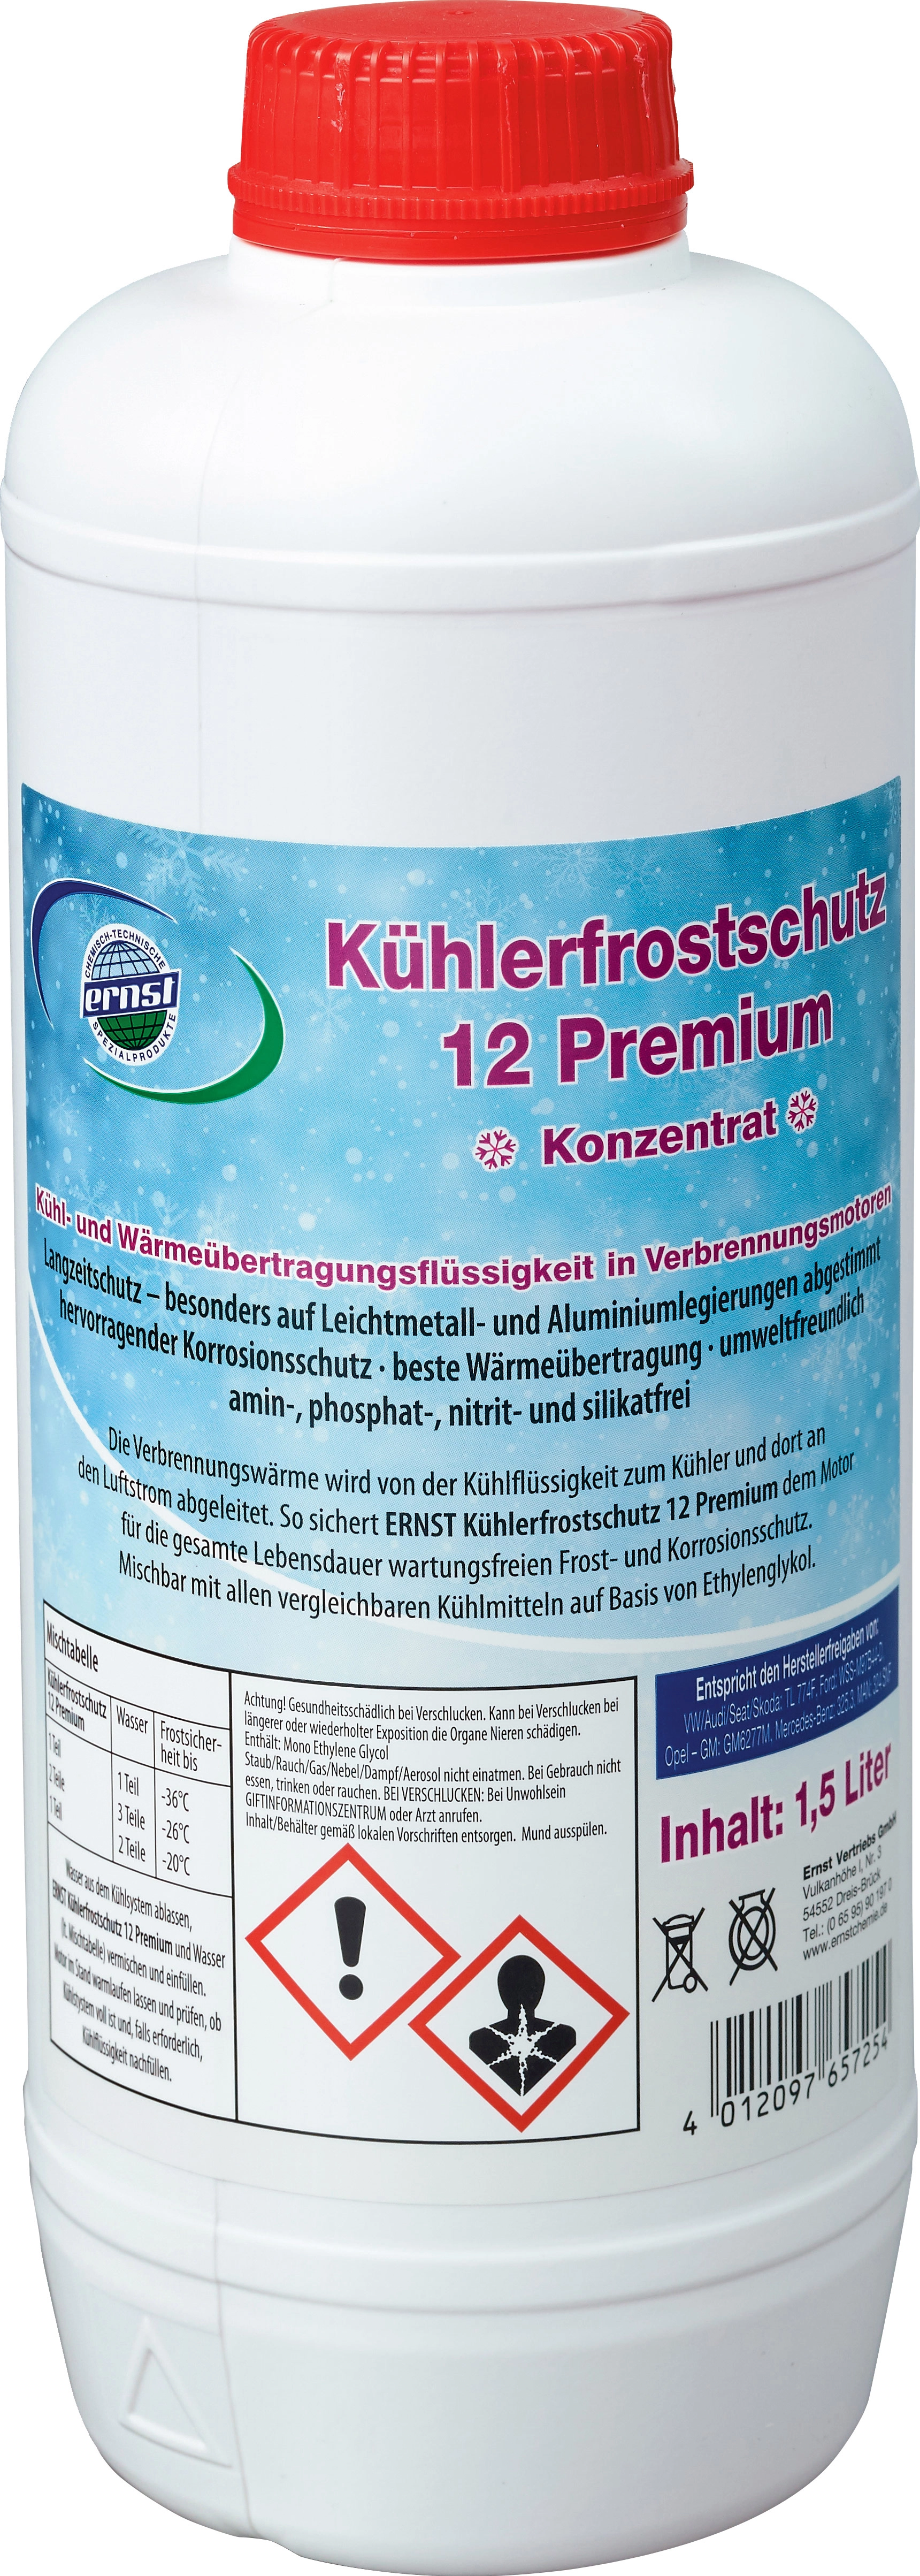 Ernst Kühlerfrostschutz 12 Premium 1,5 l Rot